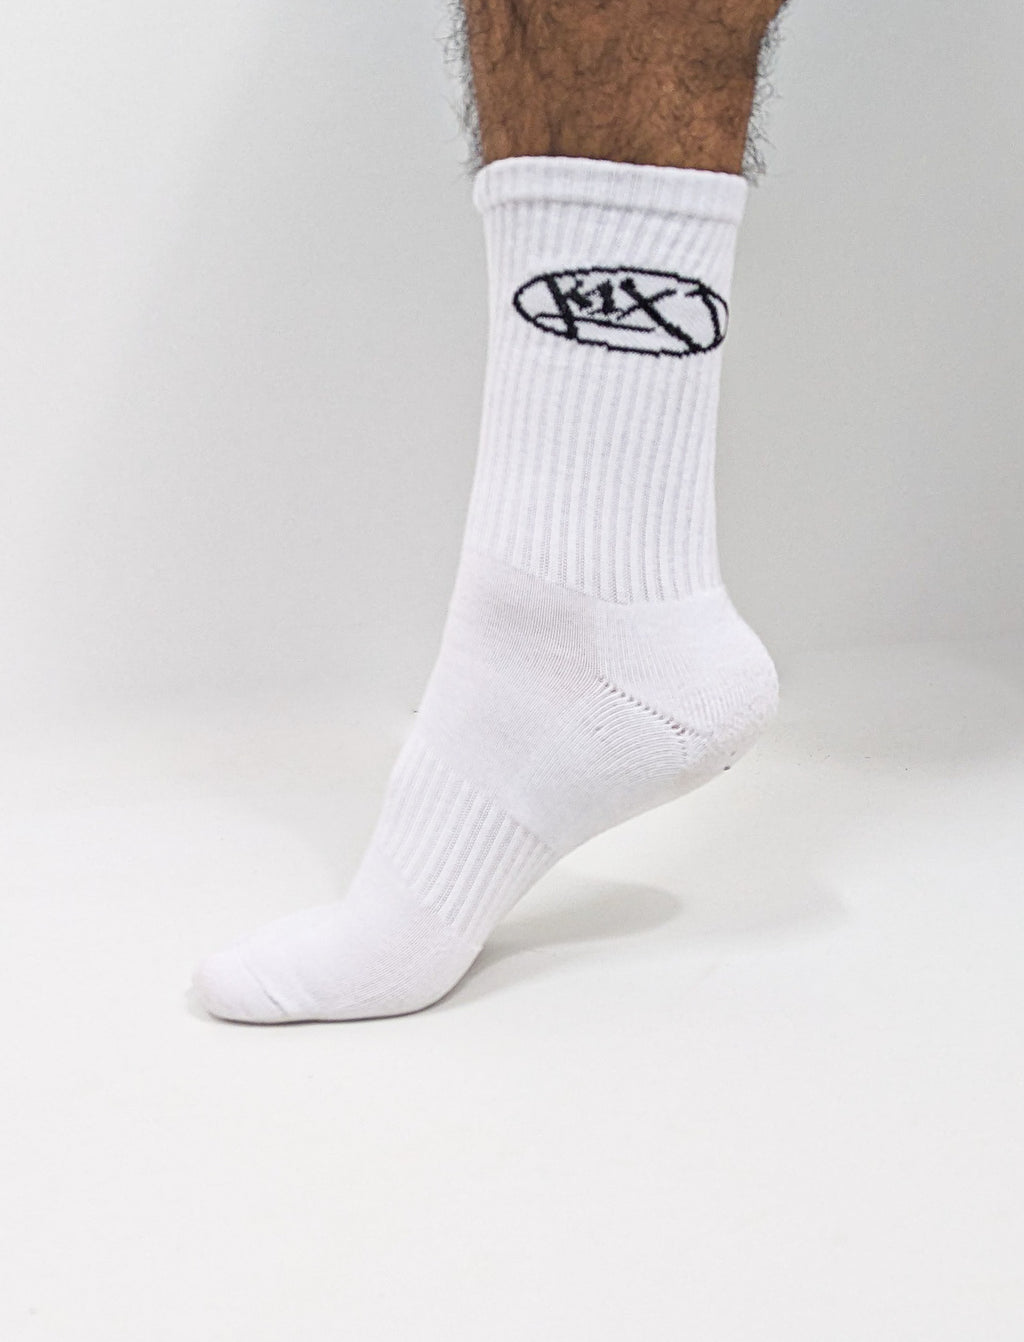 K1X Crew Socks 2 Pack White - Soulsideshop